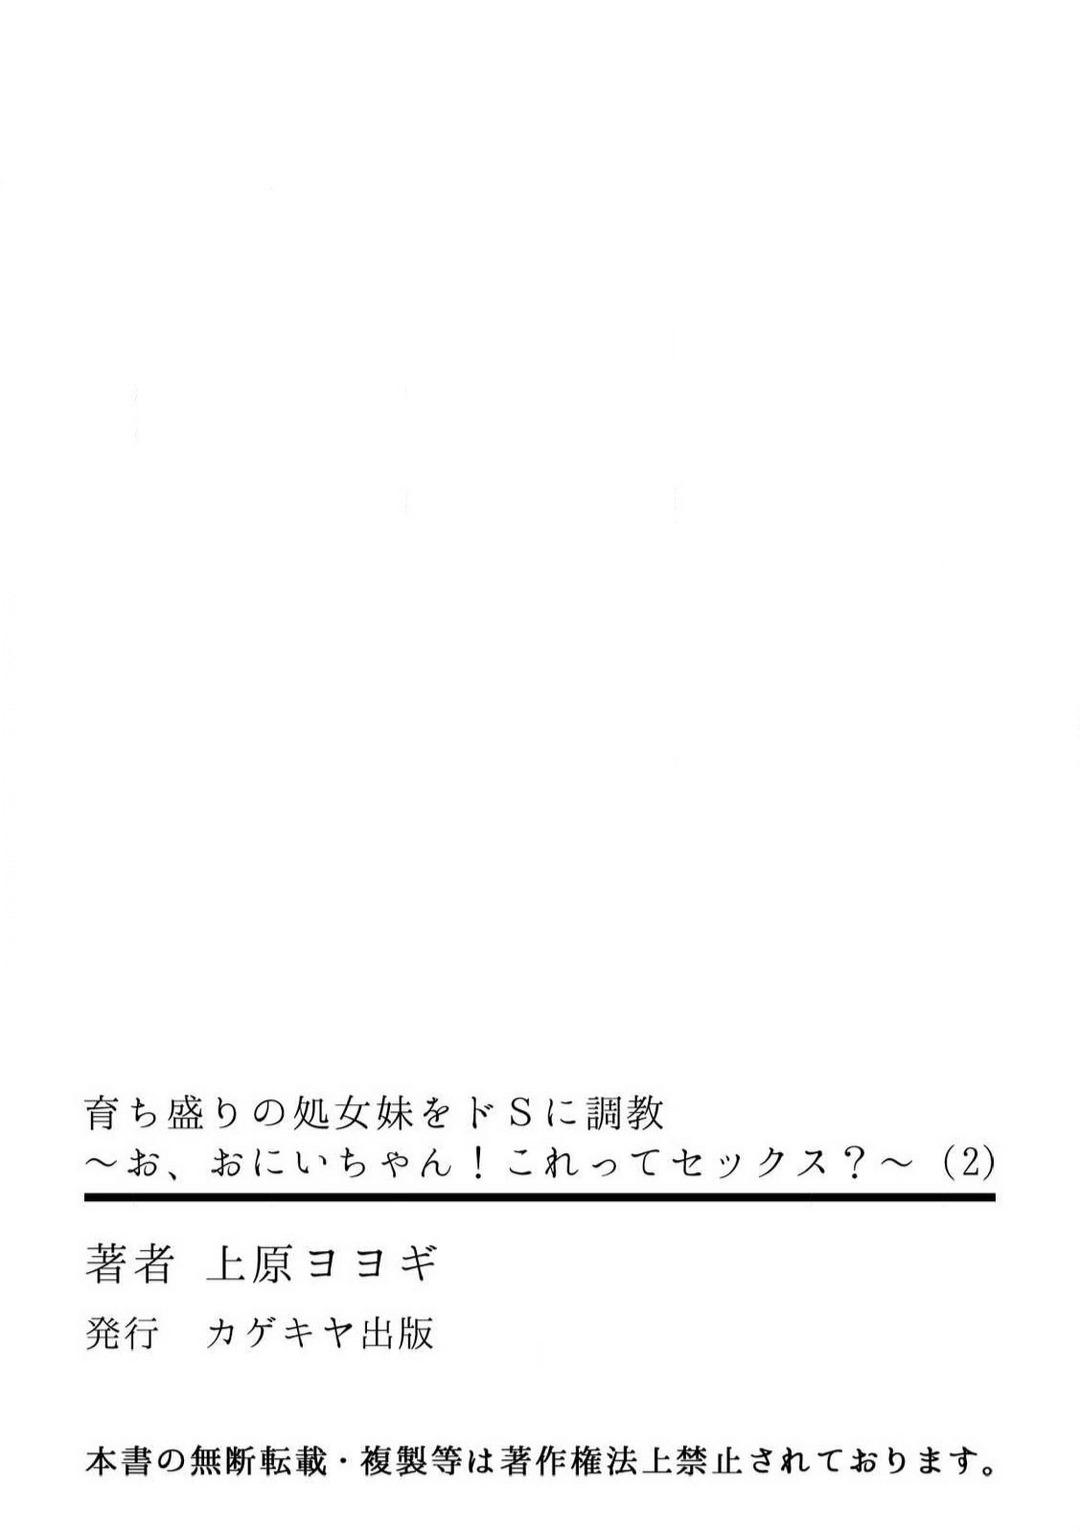 Ffm [Uehara Yoyogi] Sodachi-Mori no Shojo Imōto o Doesu ni Chōkyō 〜 O, O Niichan! Korette Sekkusu?〜Chp.1-2 Muscular - Page 64